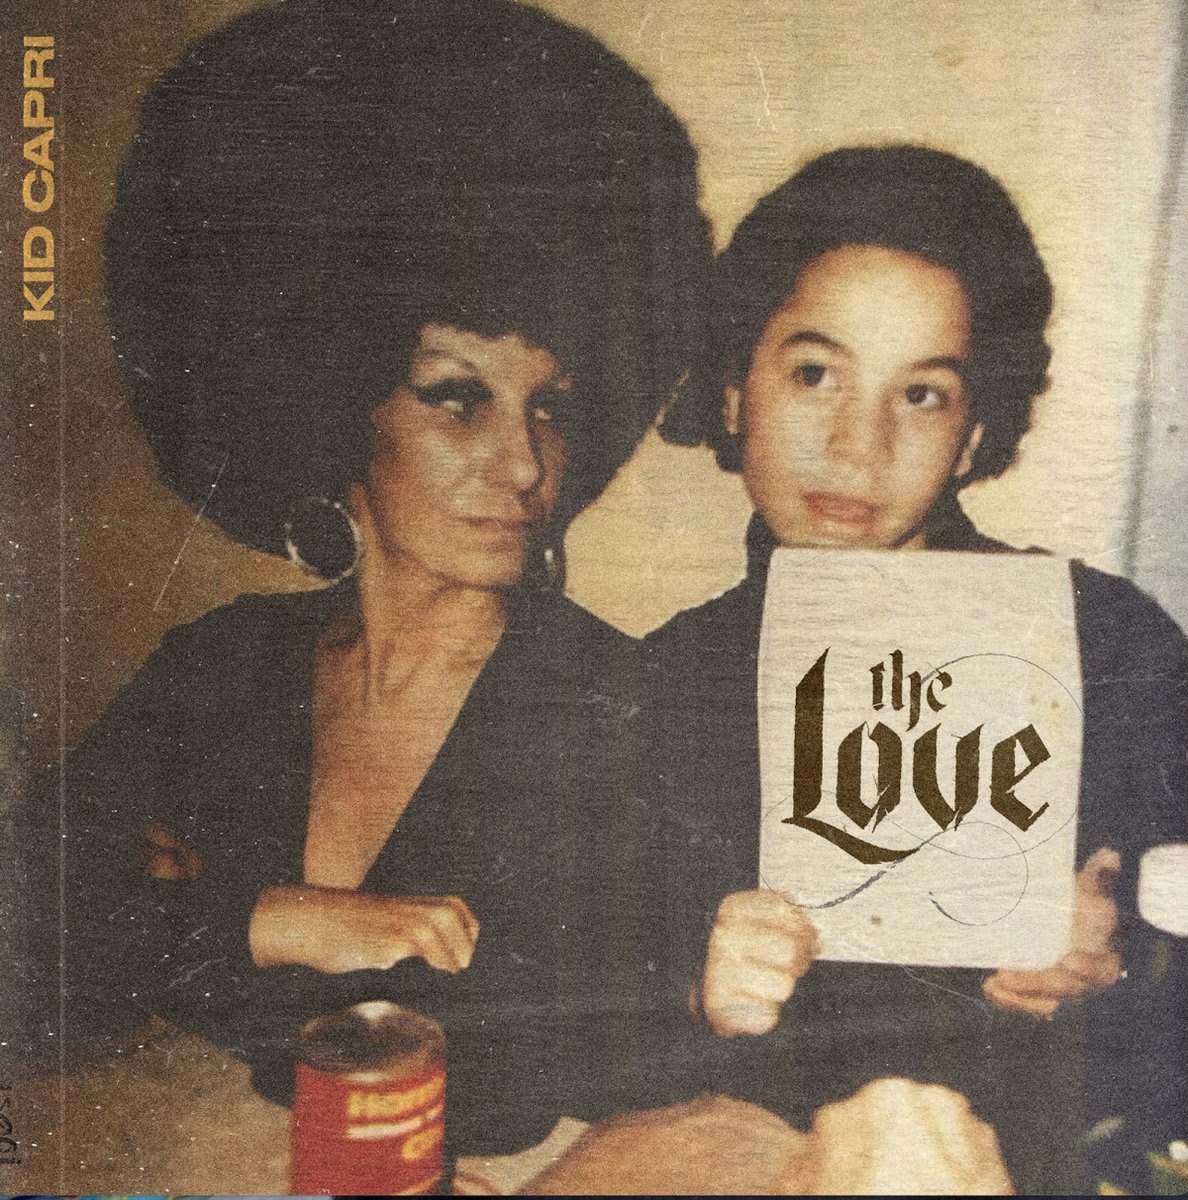 Kid Capri has returned with his third studio album, 'The Love'. LISTEN: